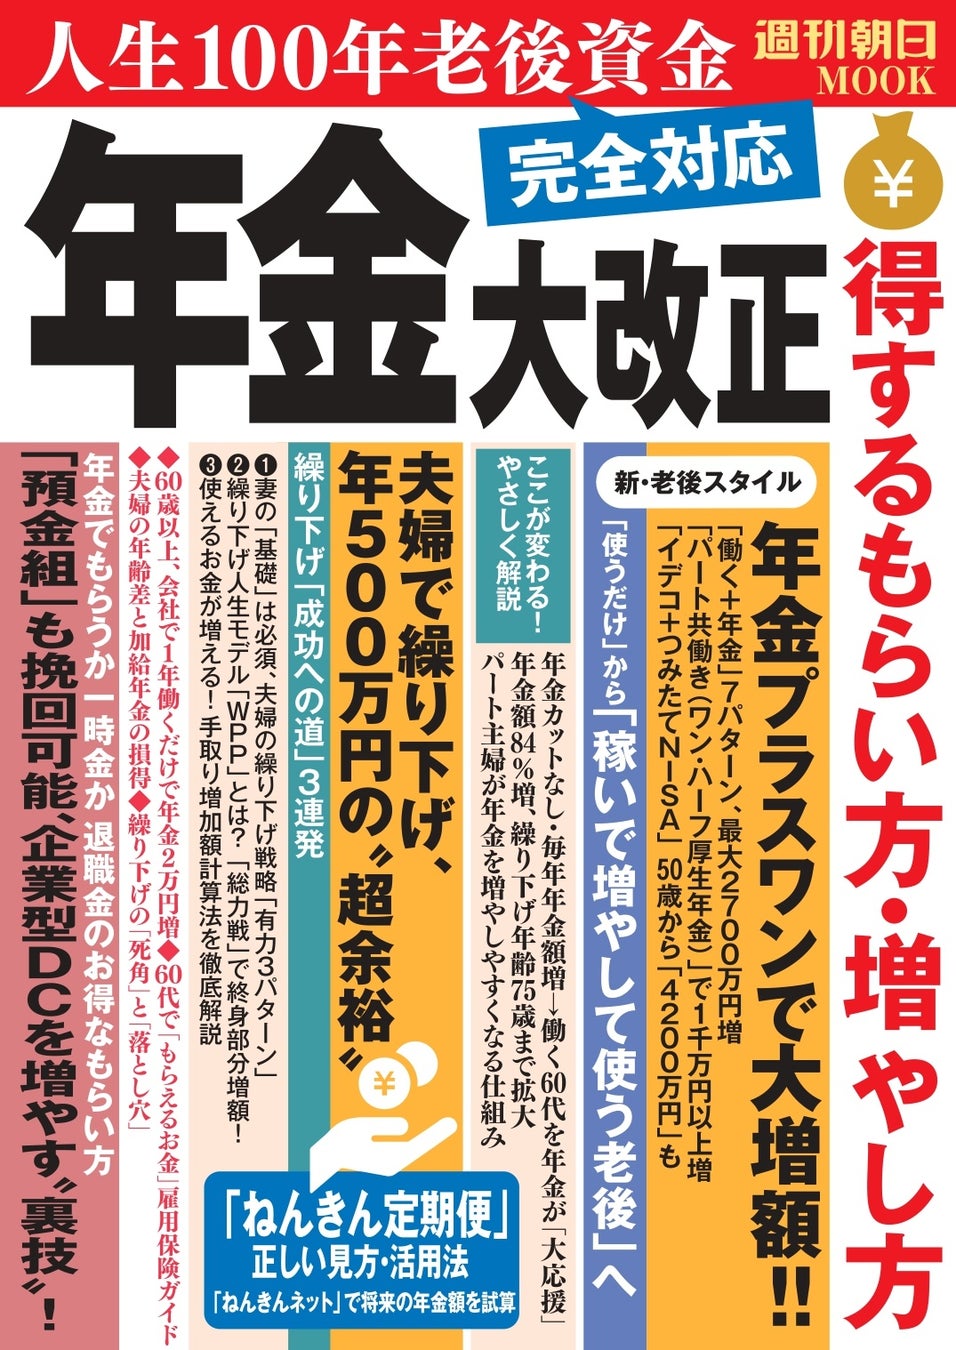 「金融庁×日本経済新聞社」共催の「FIN/SUM2022」において、今後活躍が期待されるスタートアップ企業40社に選出されました。